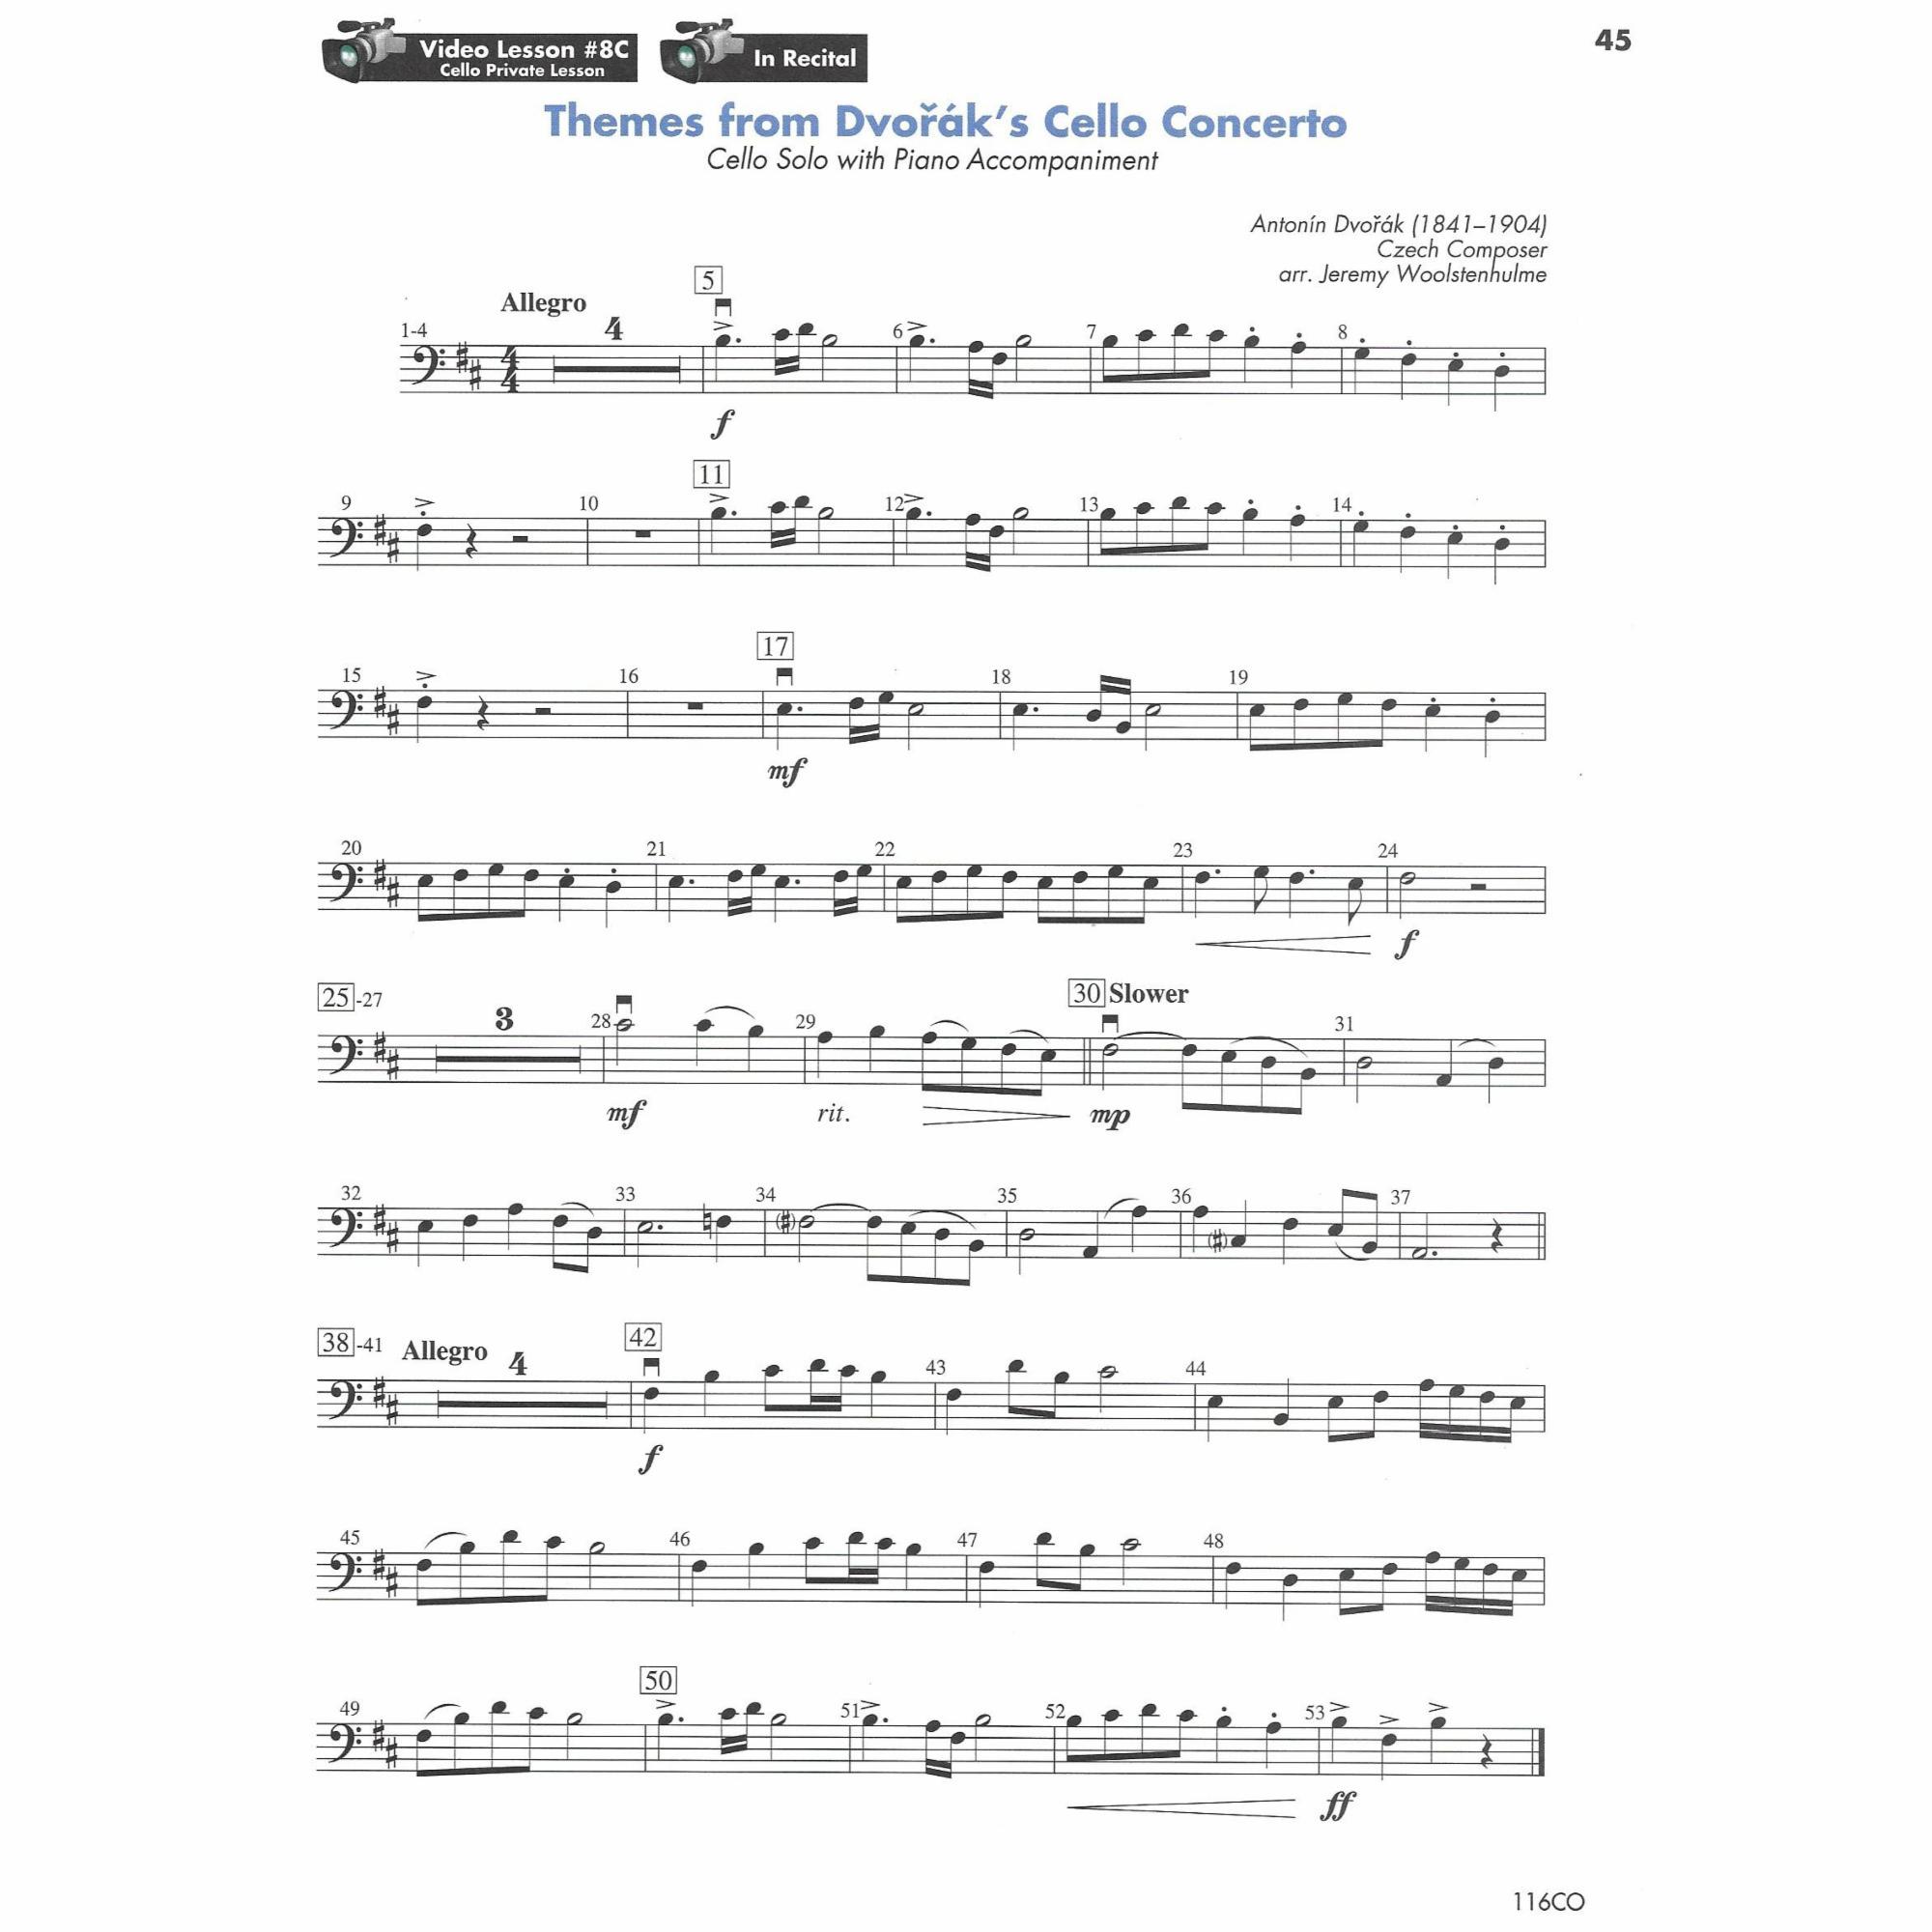 Sample: Cello (Pg. 45)